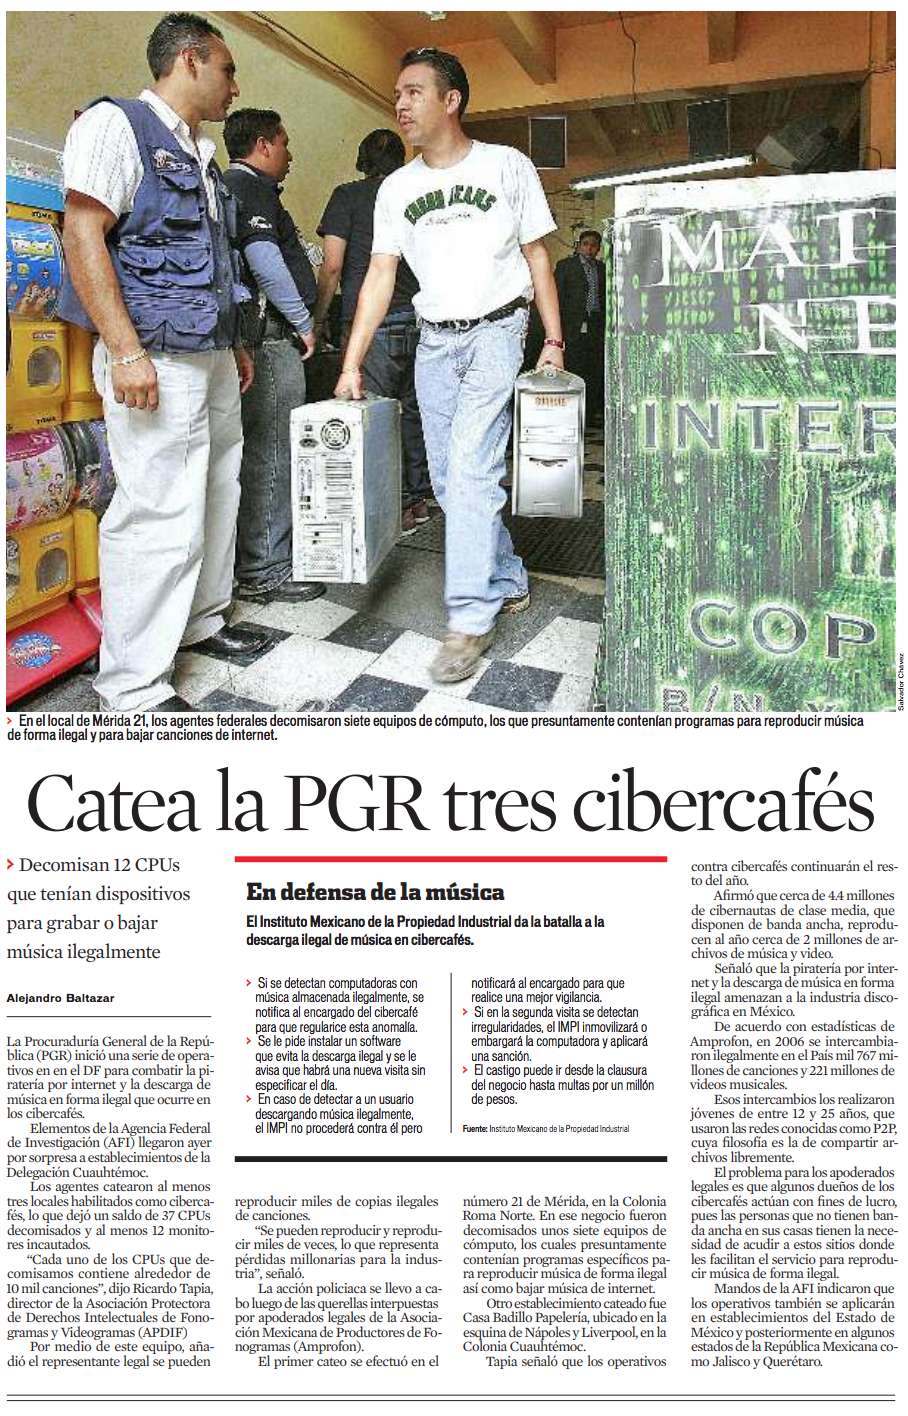 Catea la PGR tres cibercafés. Reforma, 29 de mayo de 2007.